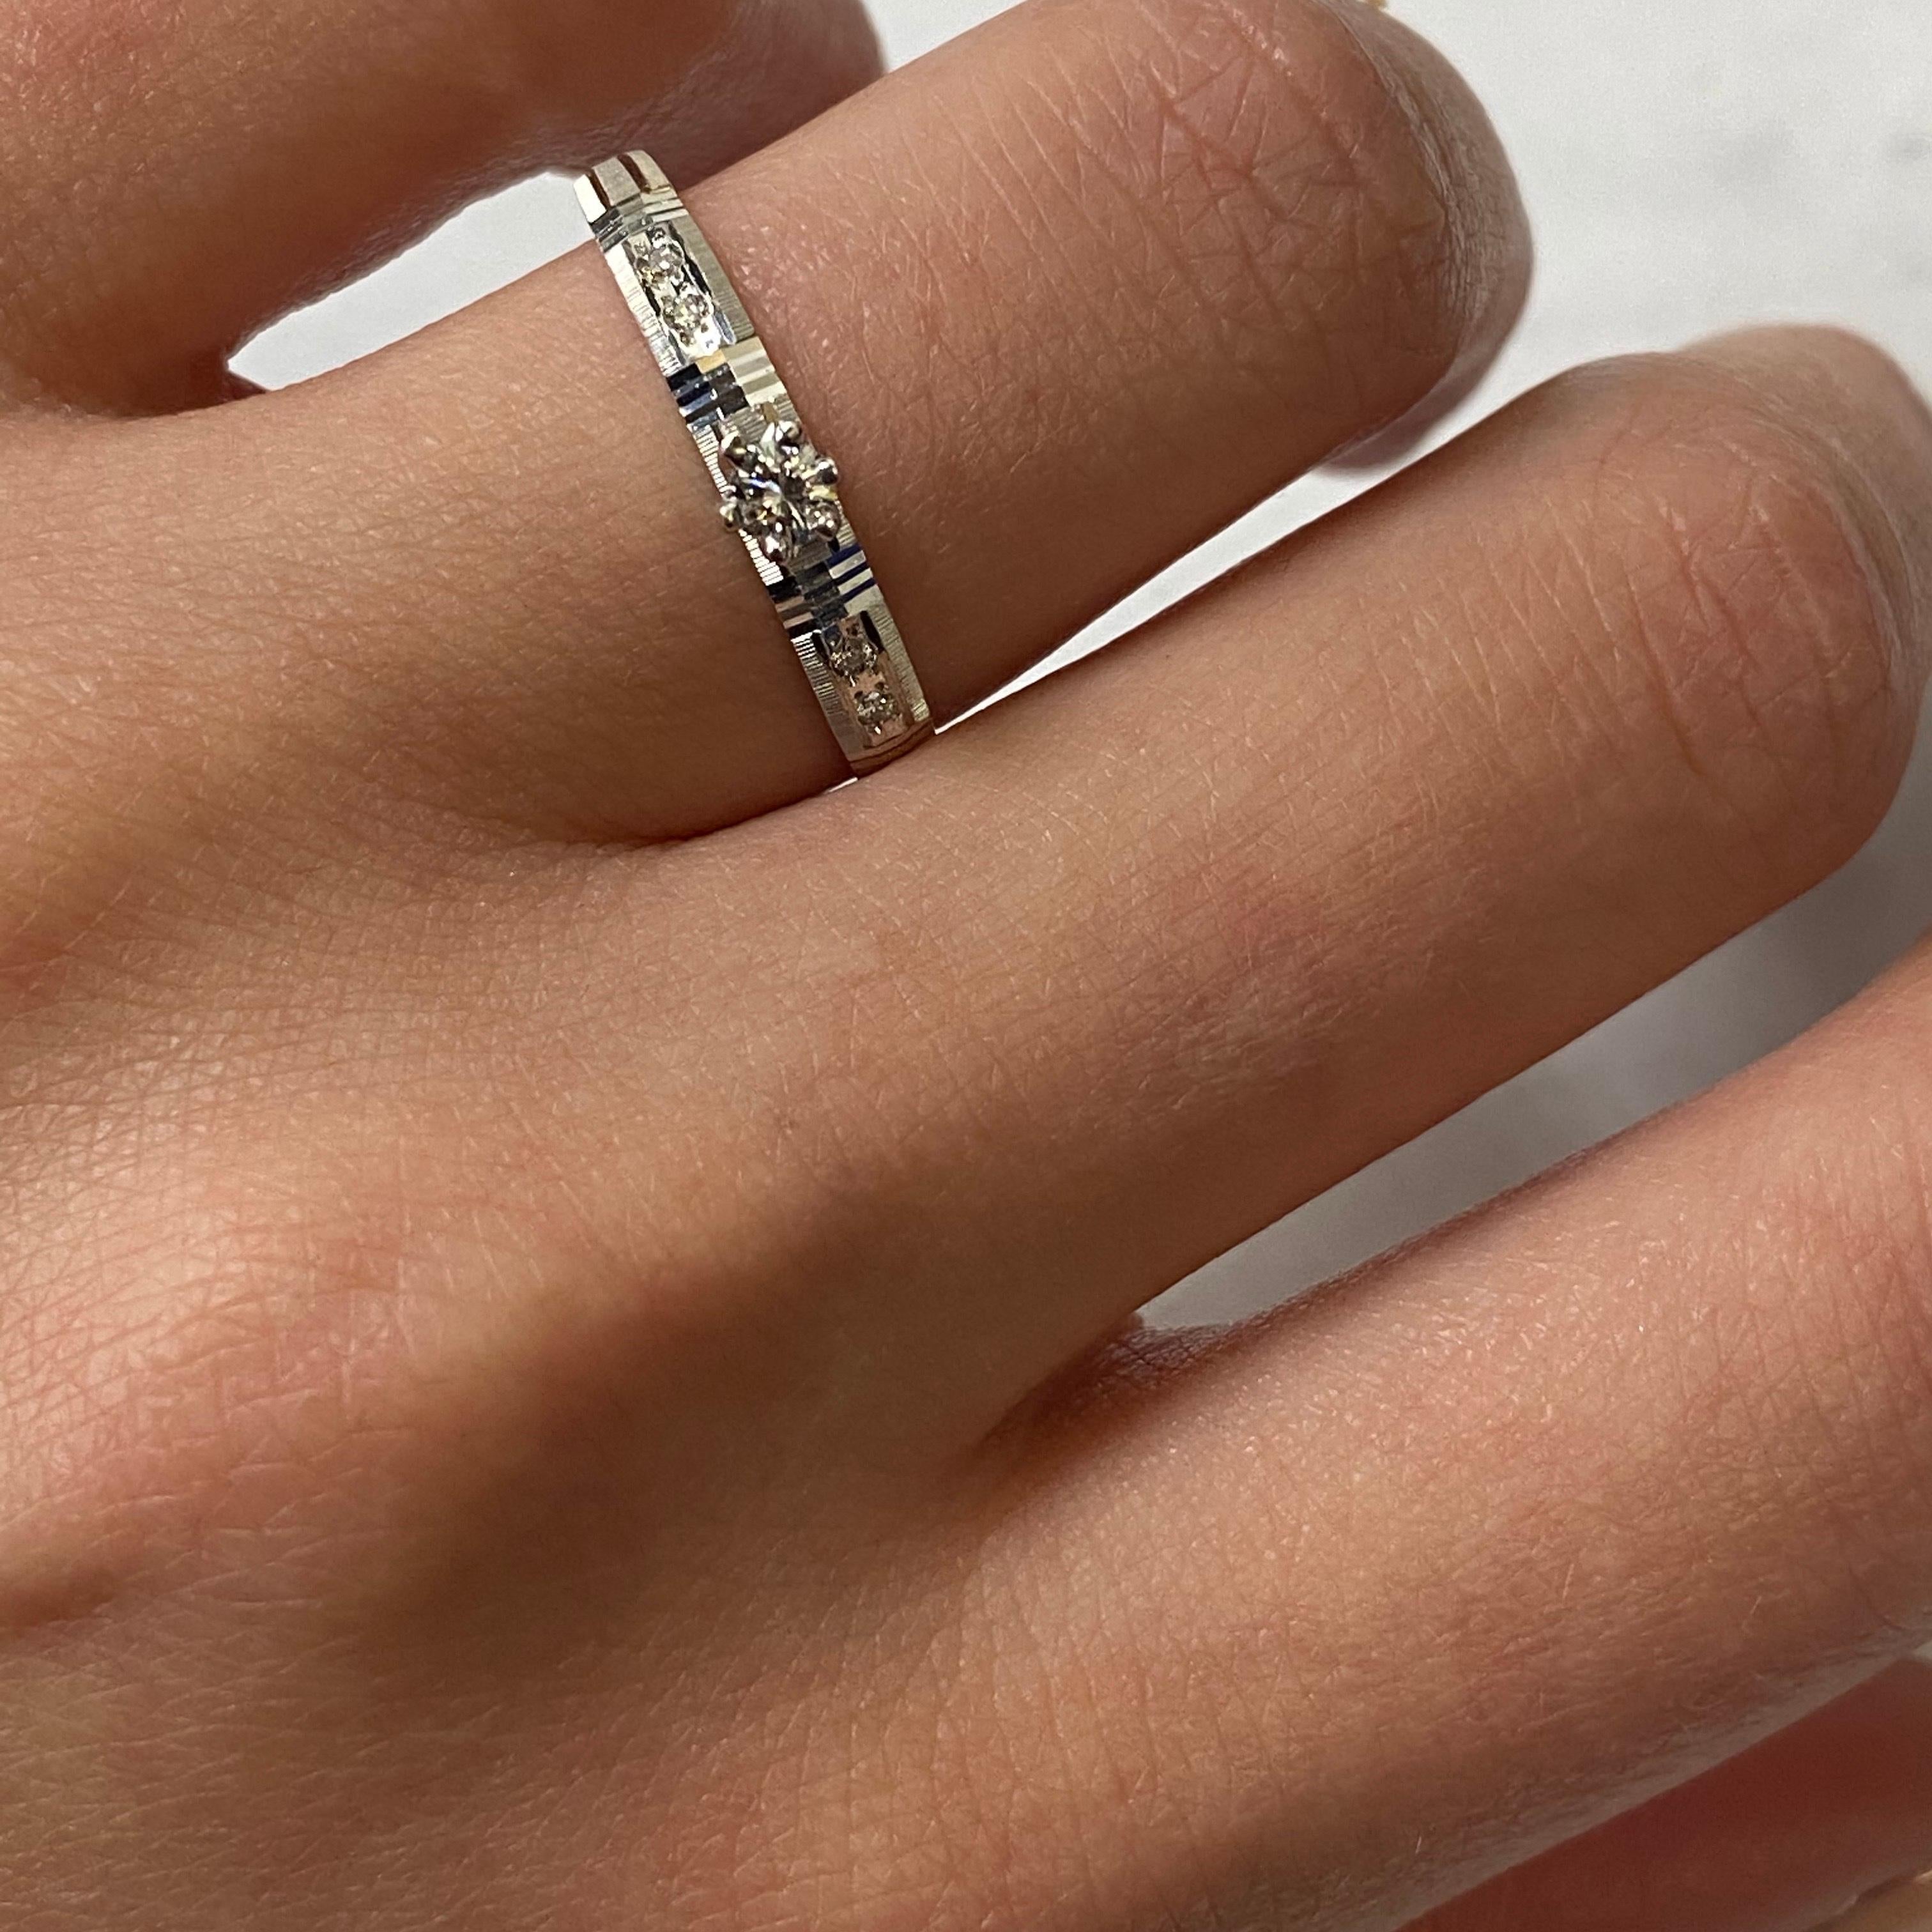 Rachel Koen 14 Karat White Gold Diamond Engagement Ring 0.15 Carat 1